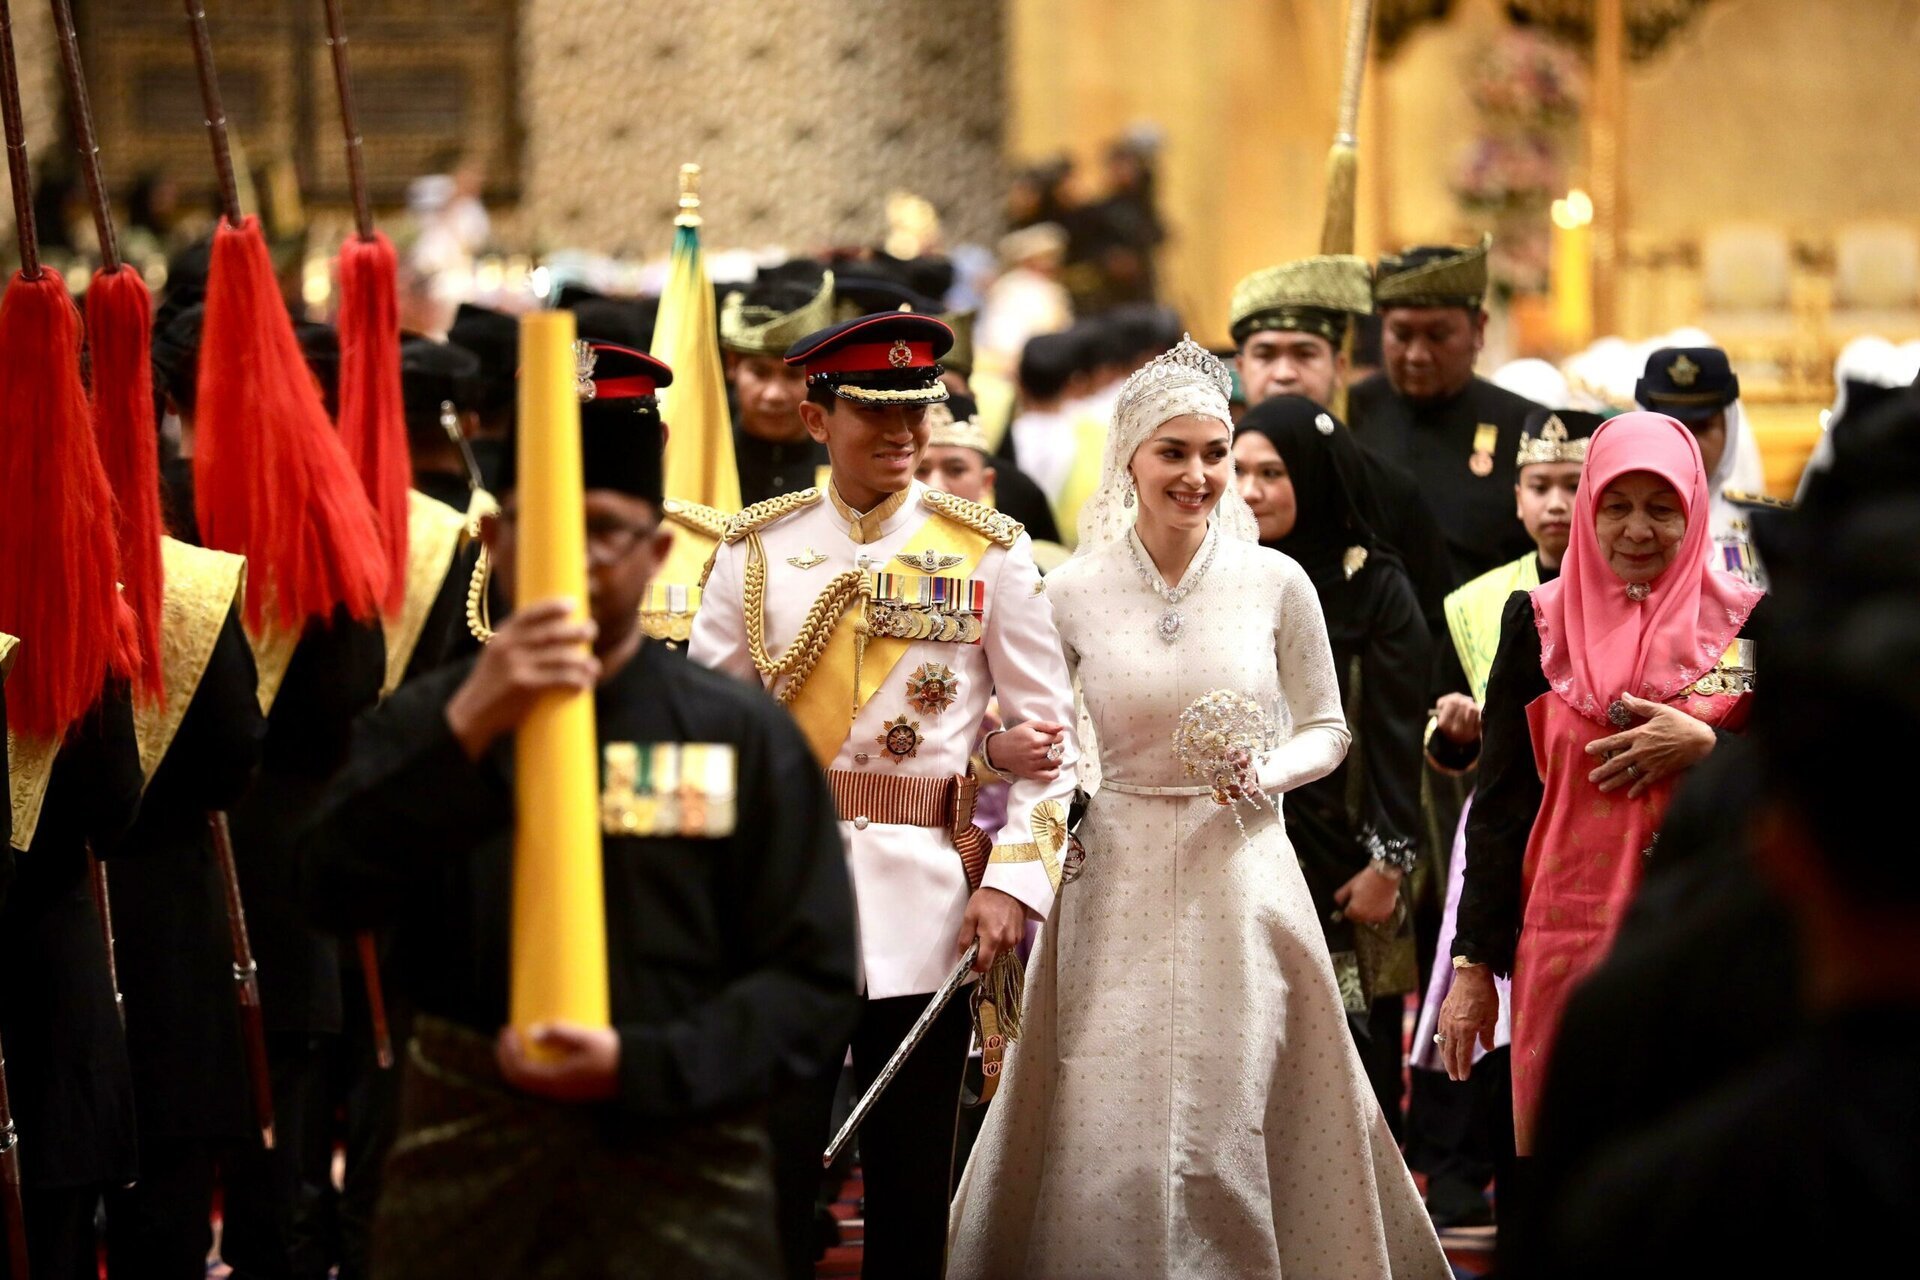 Đám cưới Hoàng tử Brunei: Cặp đôi đẹp như bước ra từ cổ tích - Ảnh 6.